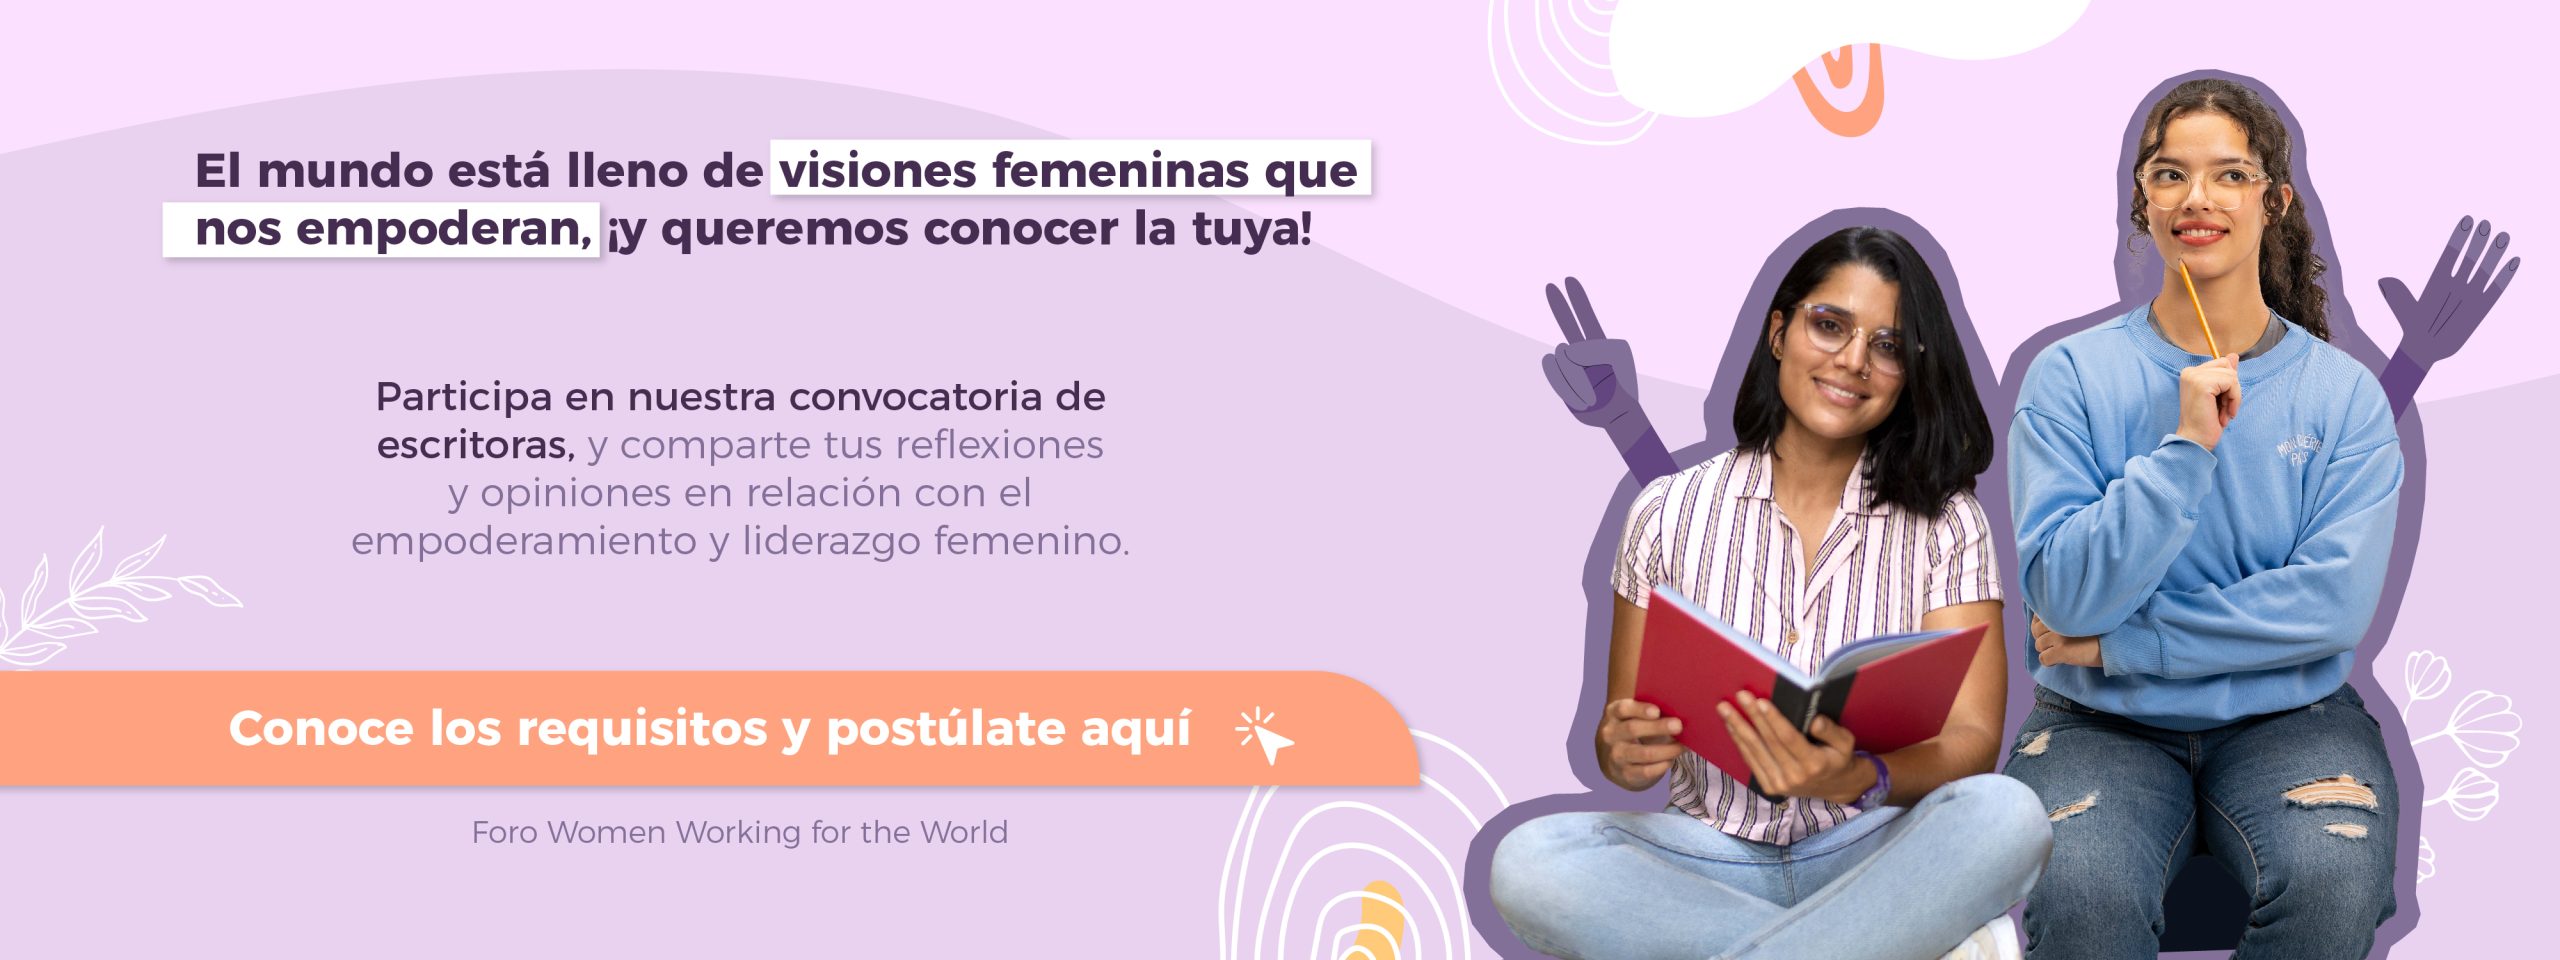 concurso mujeres escritoras banner sitio web